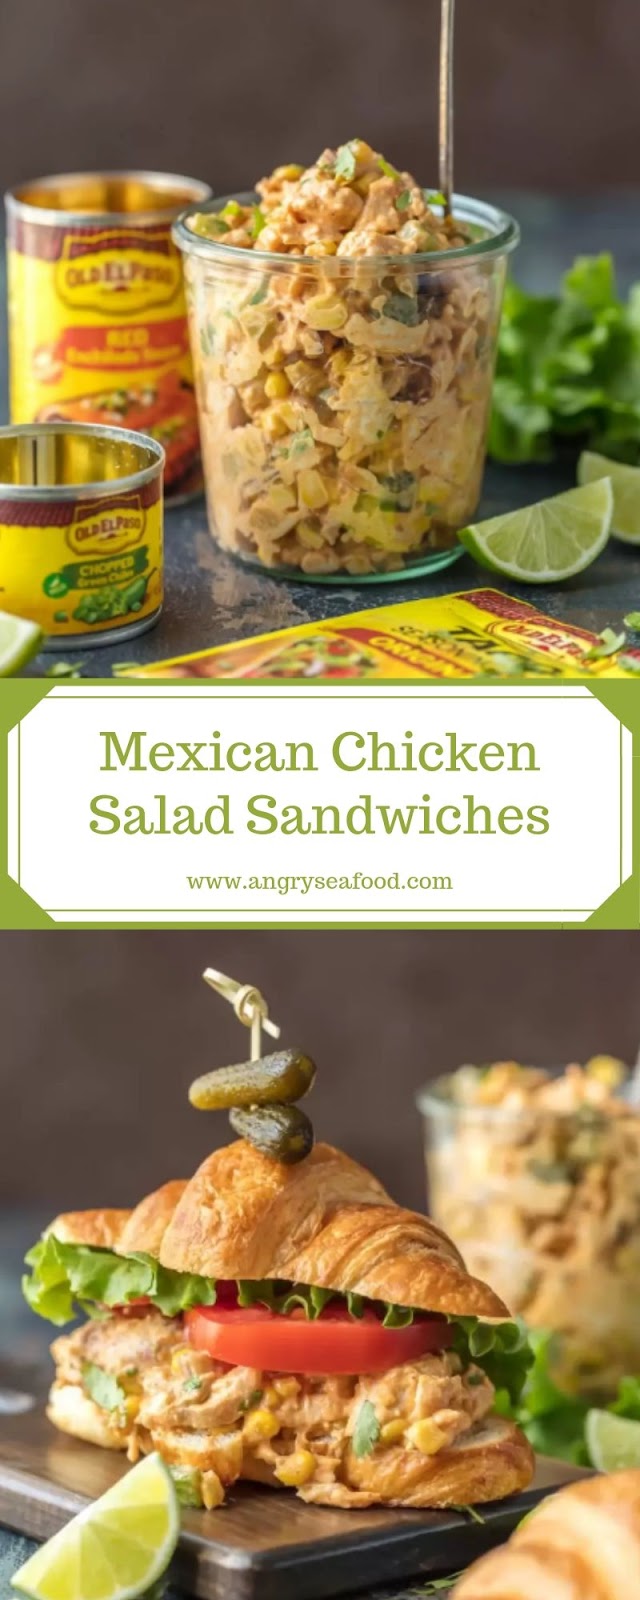 Mexican Chicken Salad Sandwiches